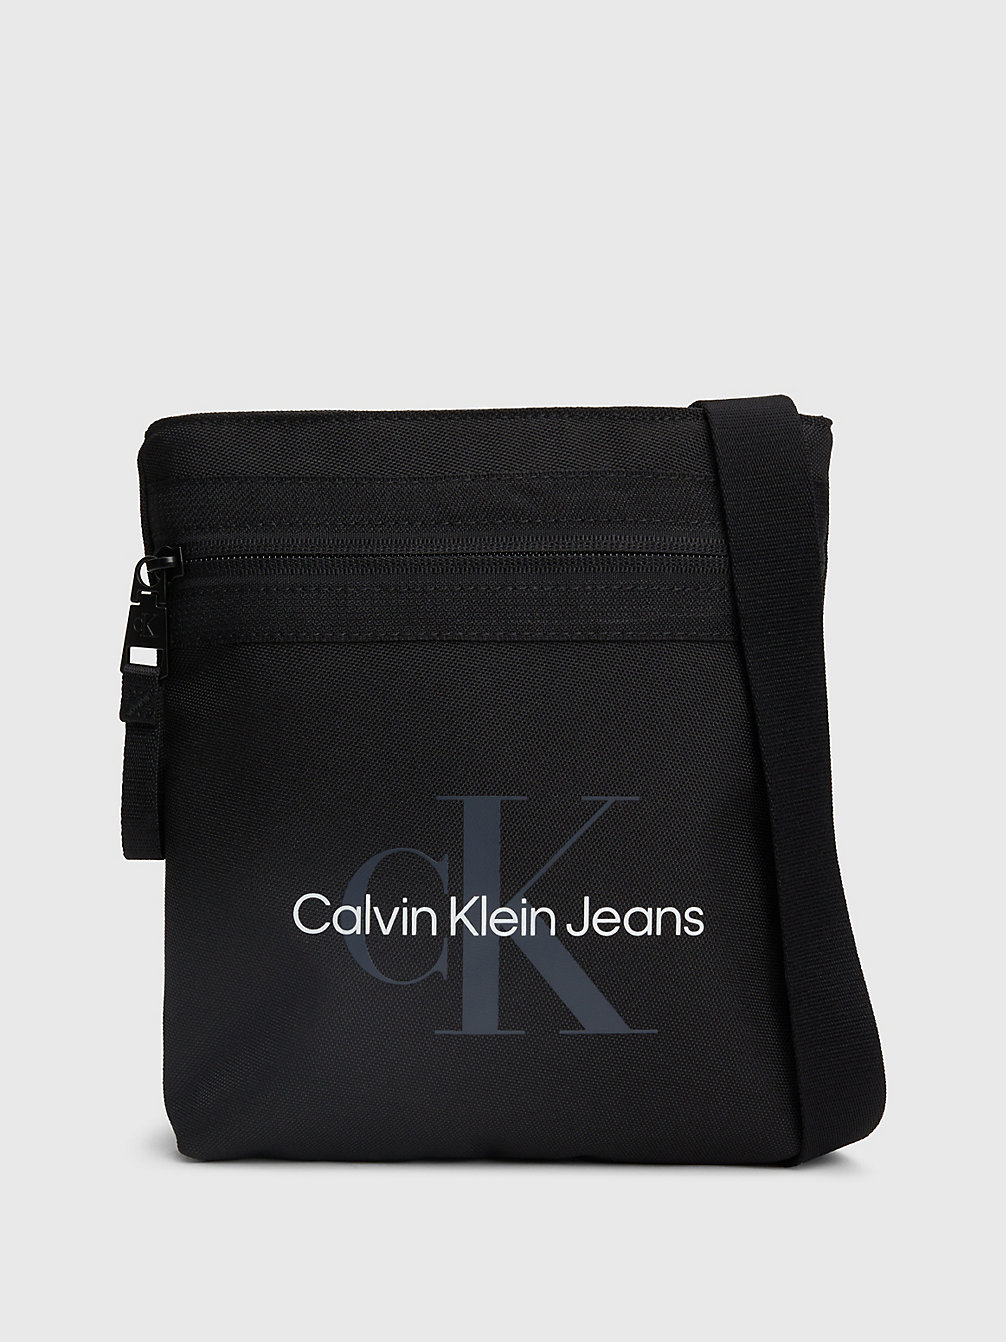 BLACK Borsa A Tracolla Piatta Con Logo undefined Uomini Calvin Klein